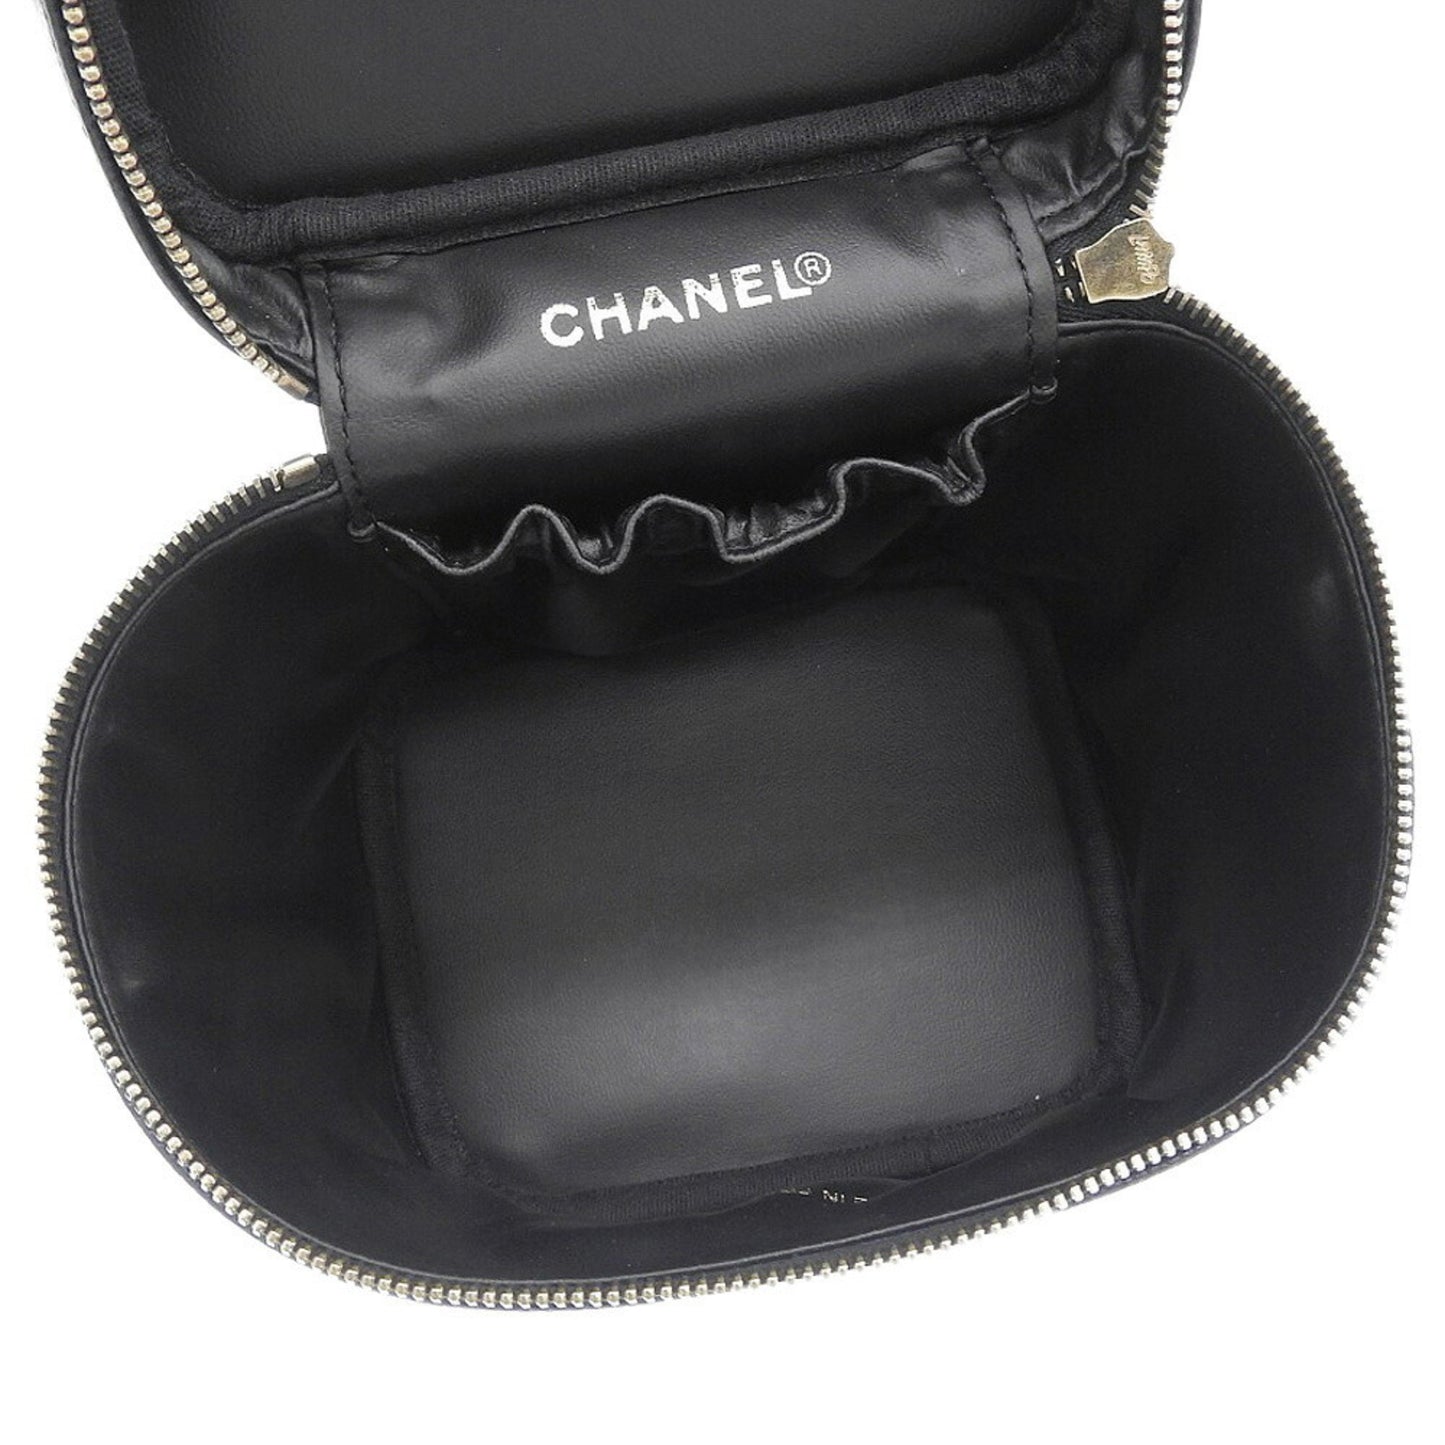 Sac/Vanity Case Seconde main Chanel en Cui Caviar Noir